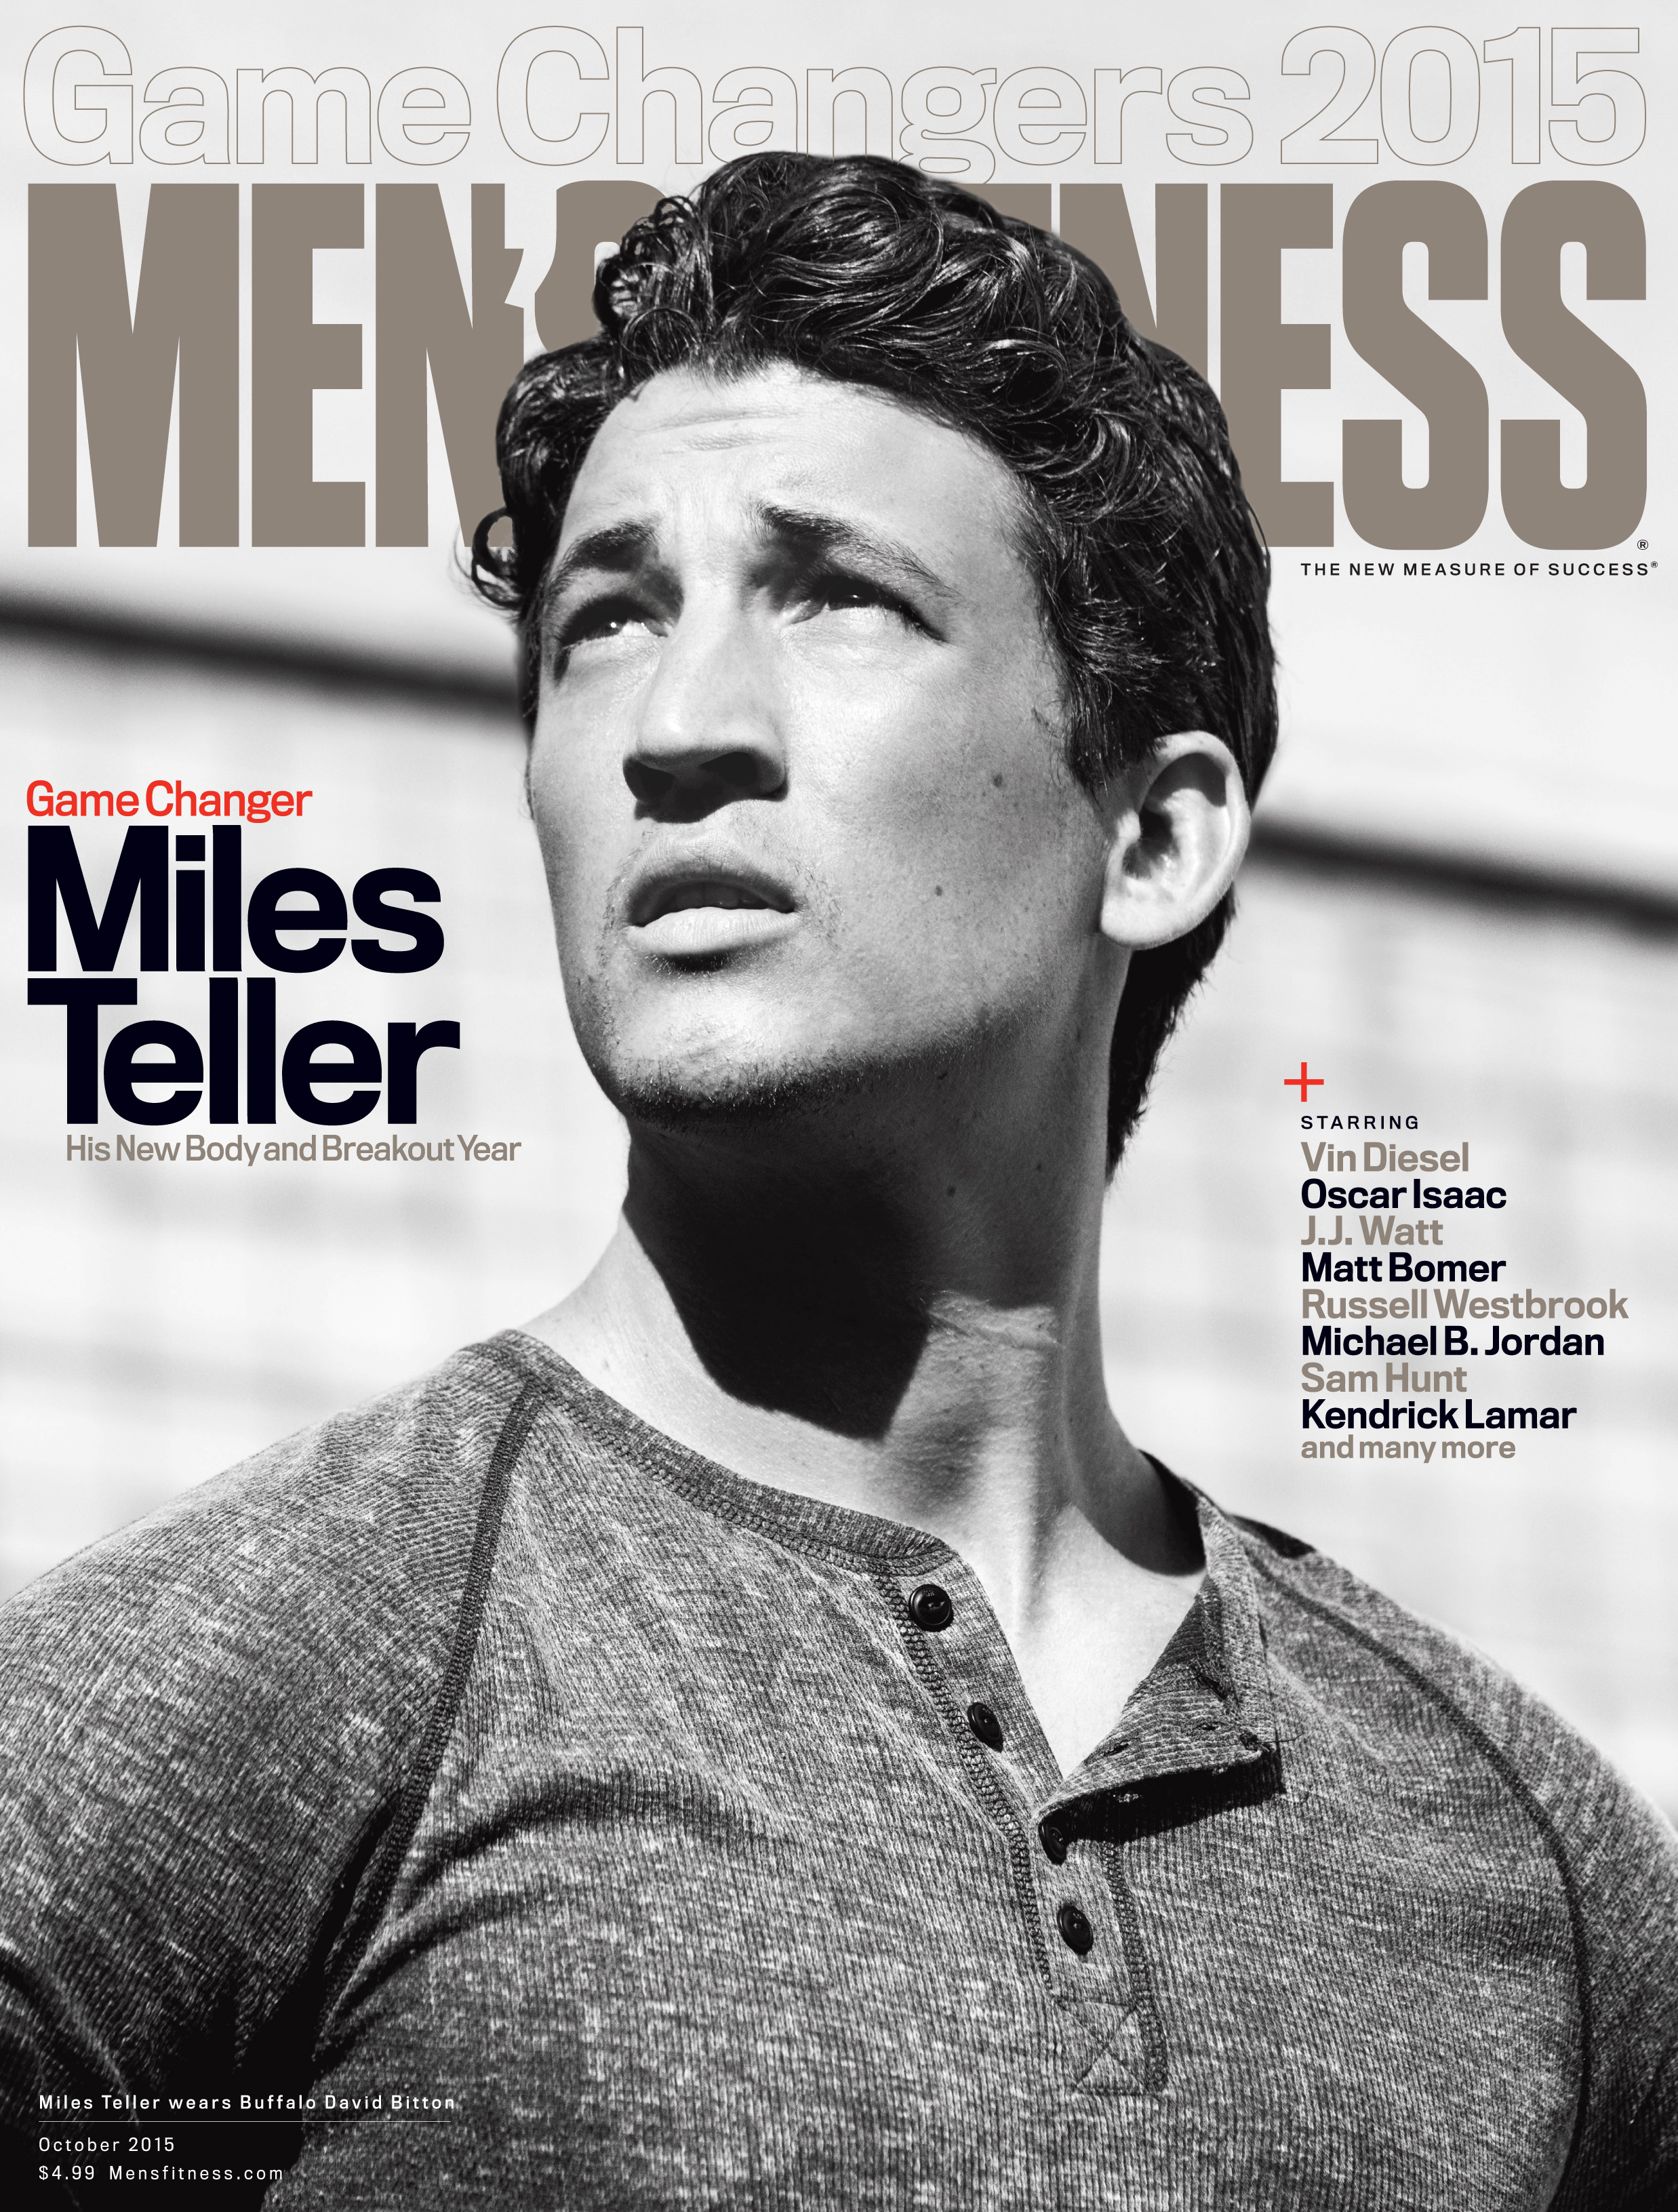 Men's Fitness-"Game Changer: Miles Teller," October